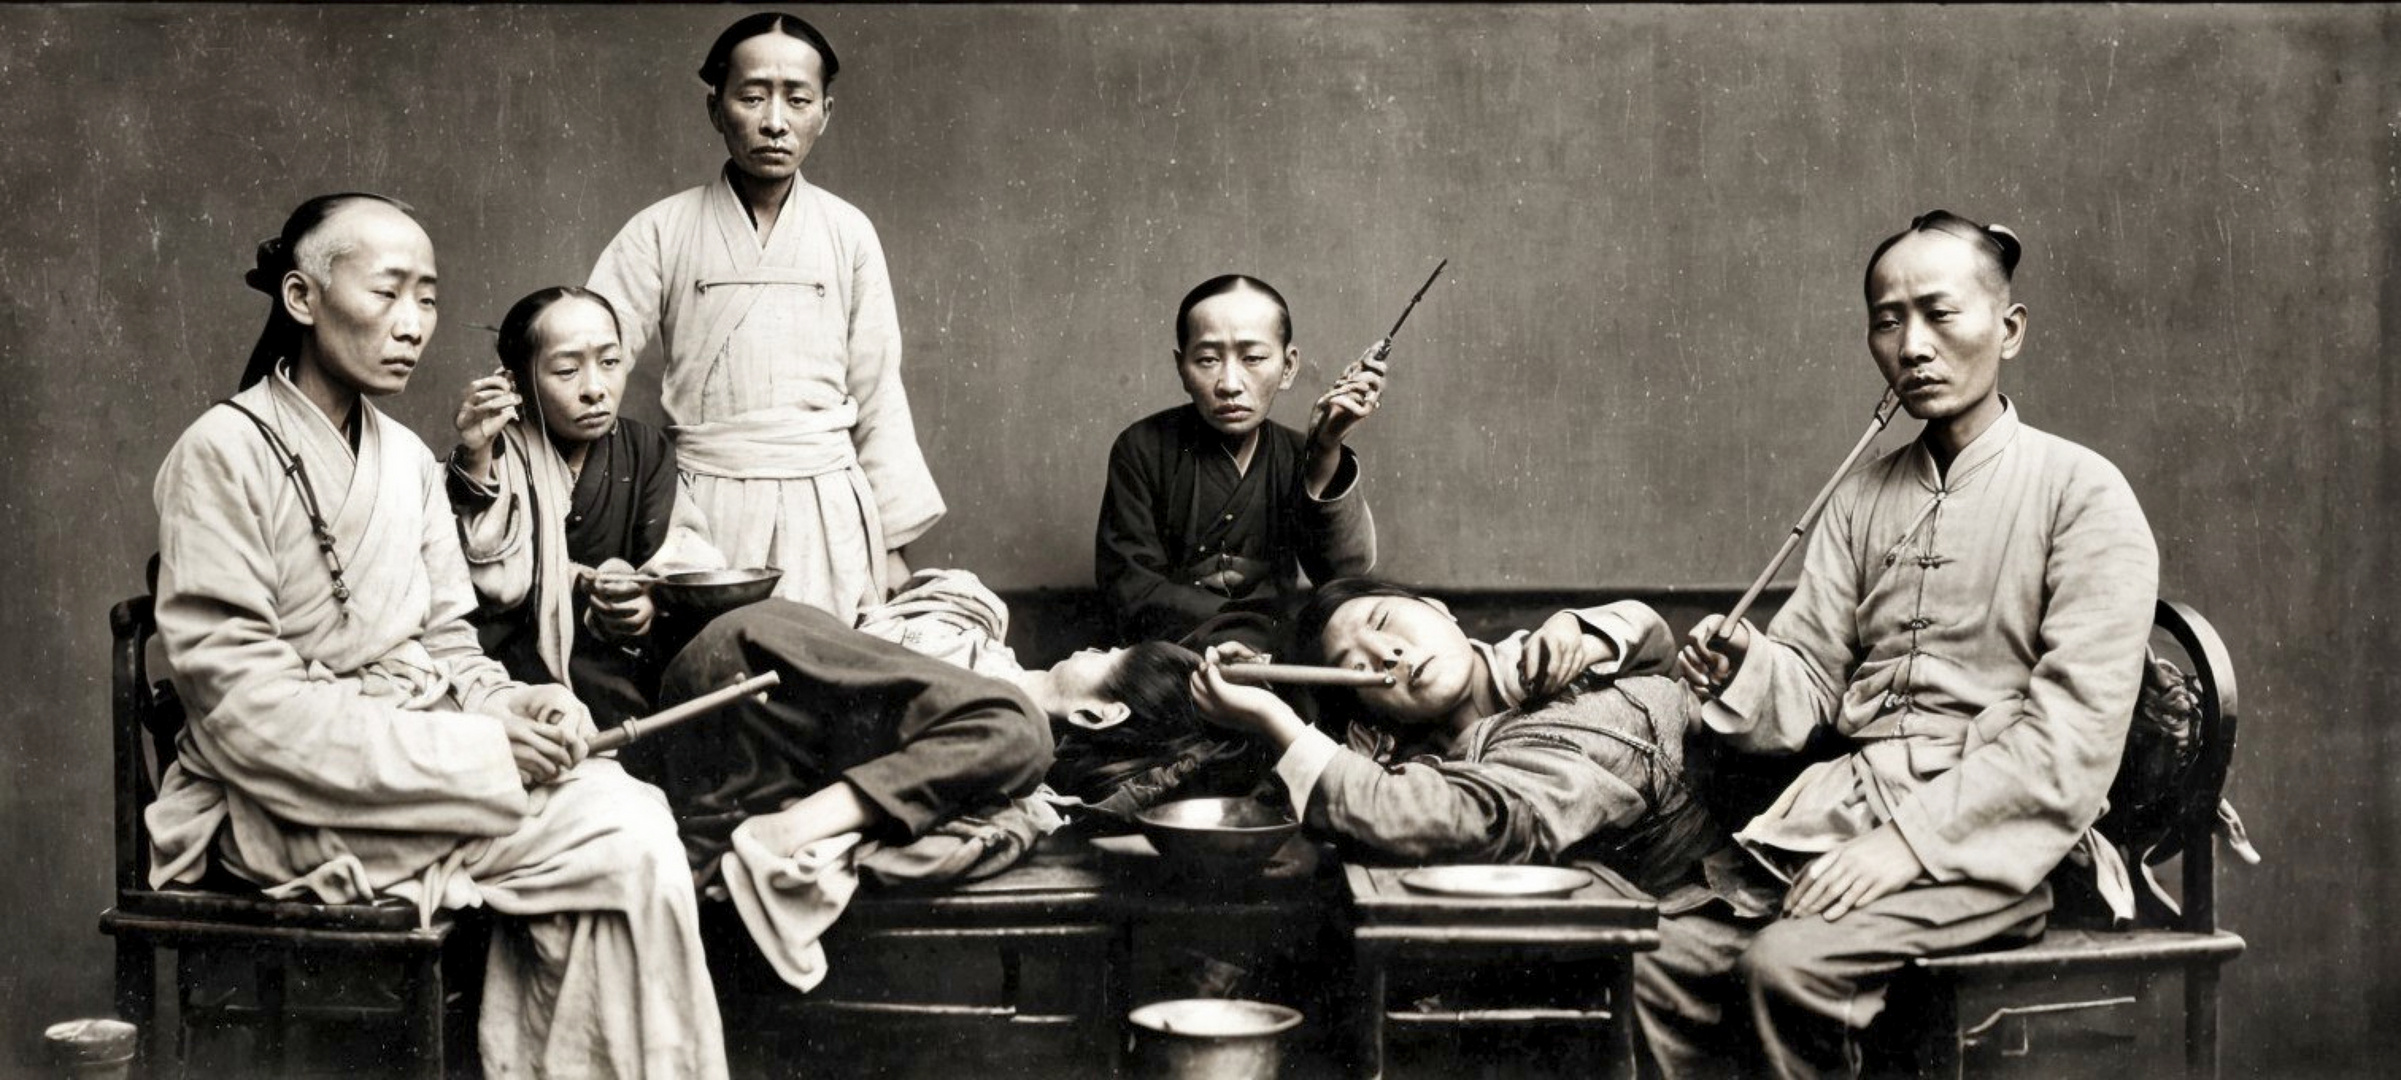 Das Opiumrauchen im China der Ch’ing-Zeit (1644–1911) hier um 1900